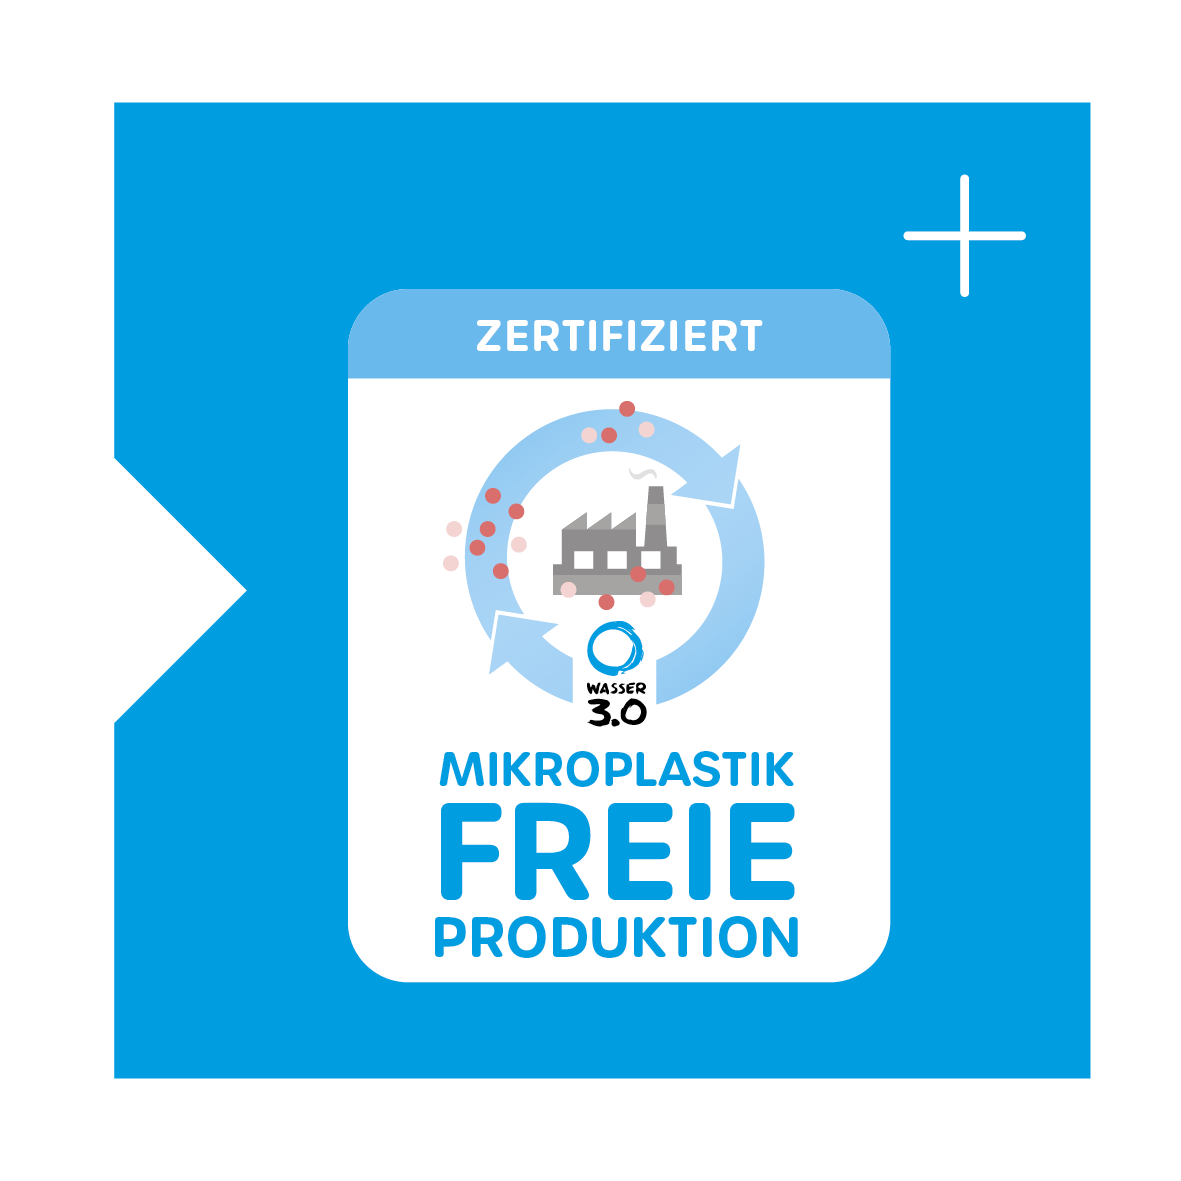 Das Zertifikat für die Mikroplastikfreie Produktion